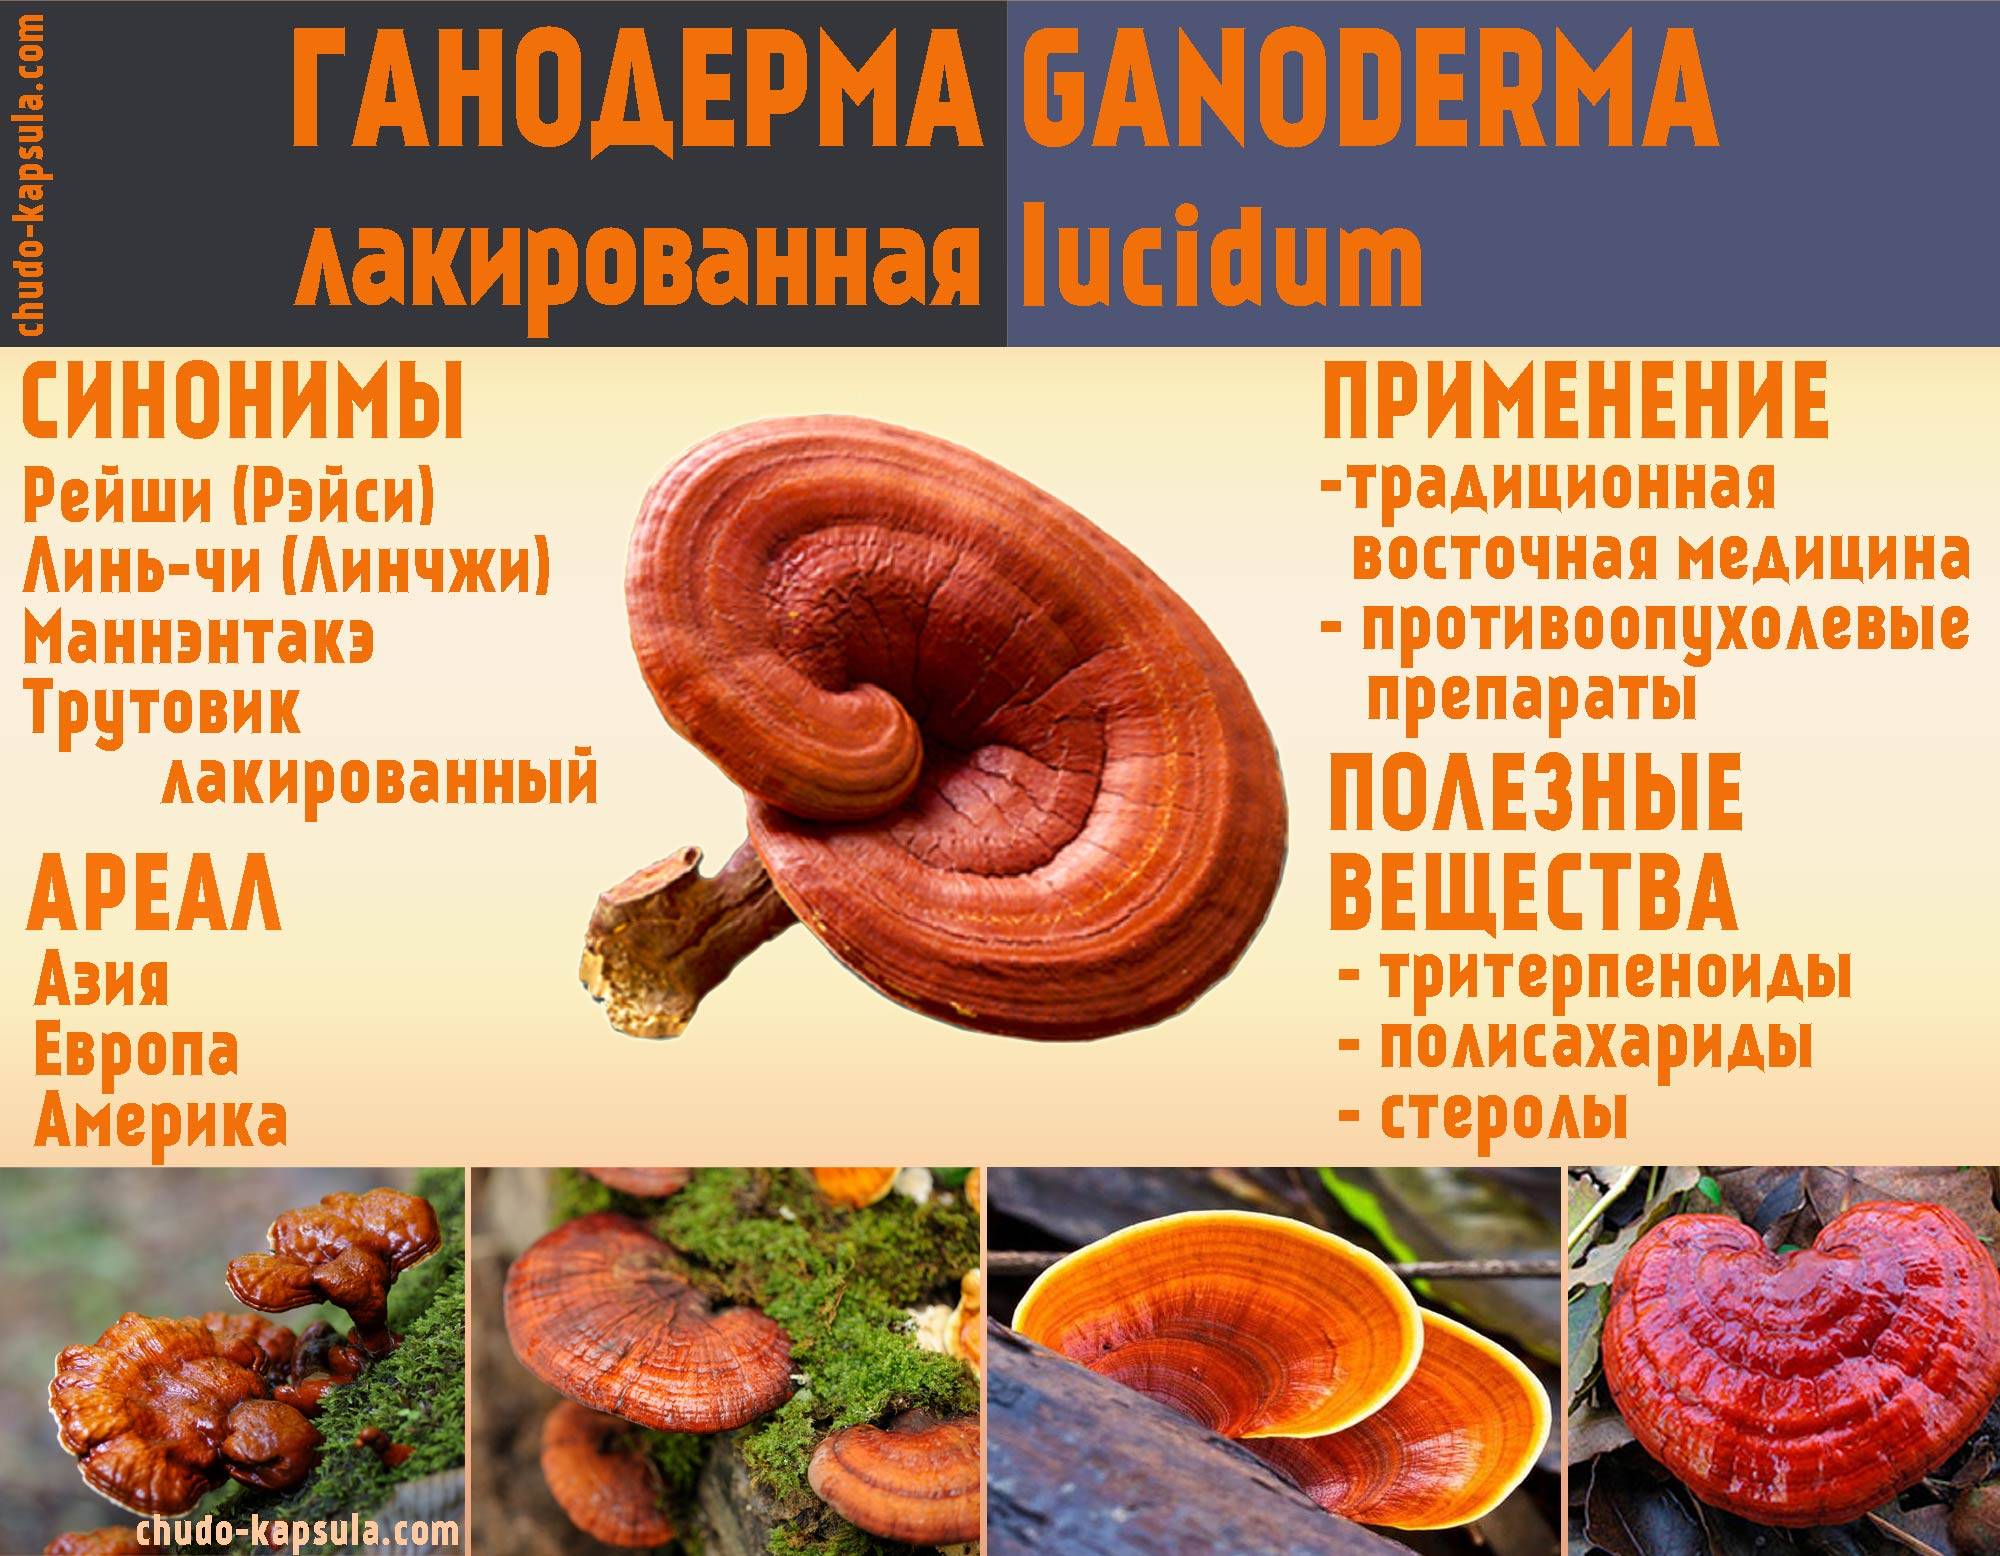 Линчжи, гриб рейши или трутовик лакированный (ganoderma lucidum): лечебные свойства, противопоказания и способы применения